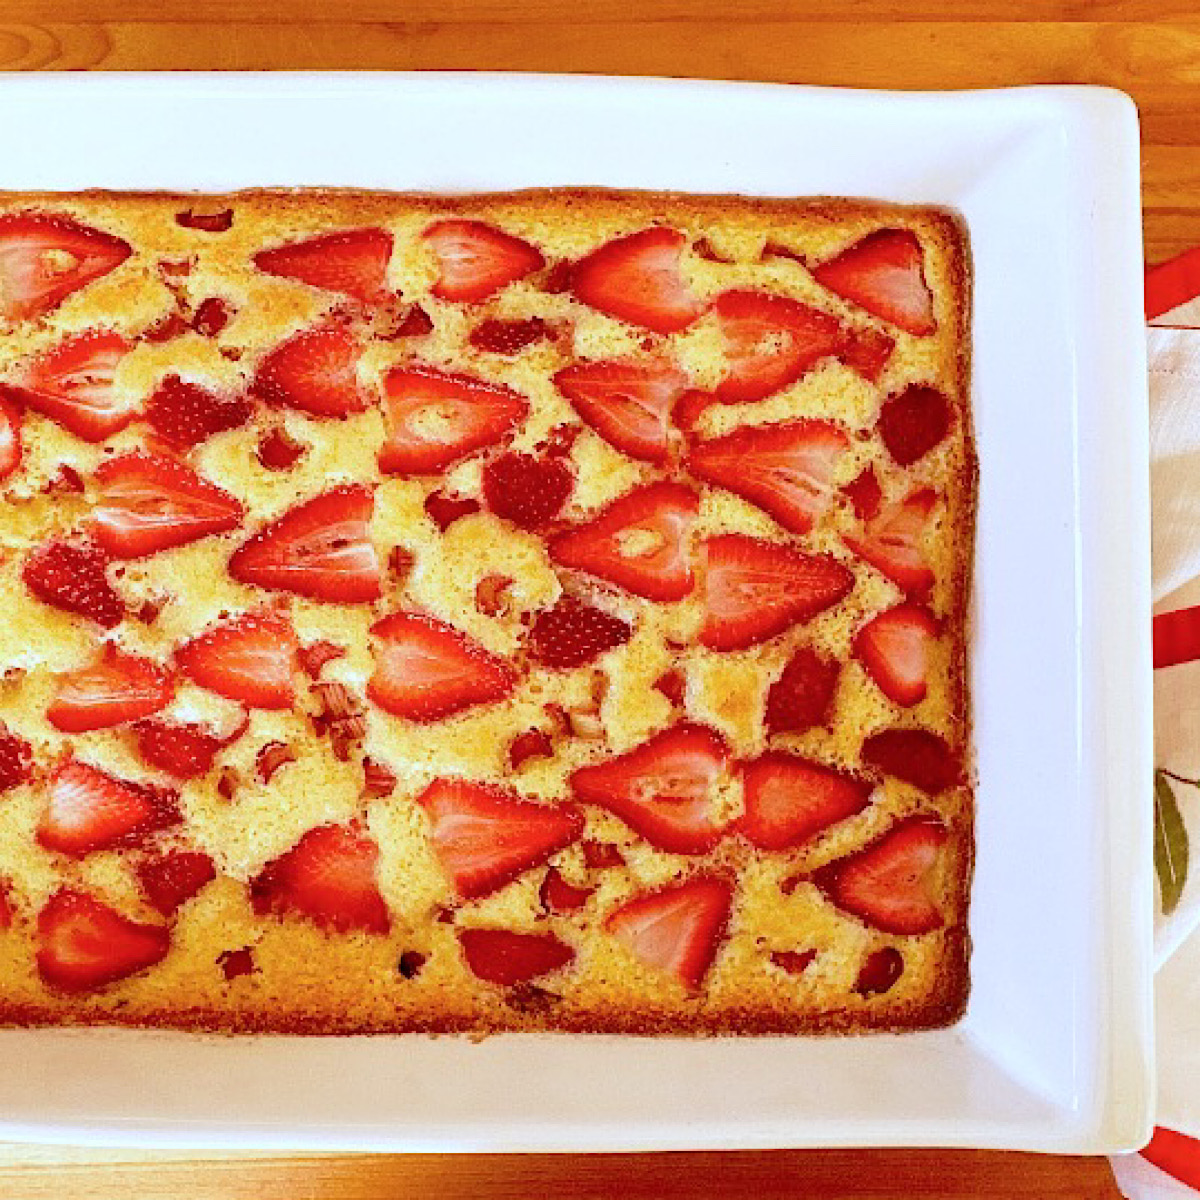 Strawberry rhubarb sheet cake in white baking dish.